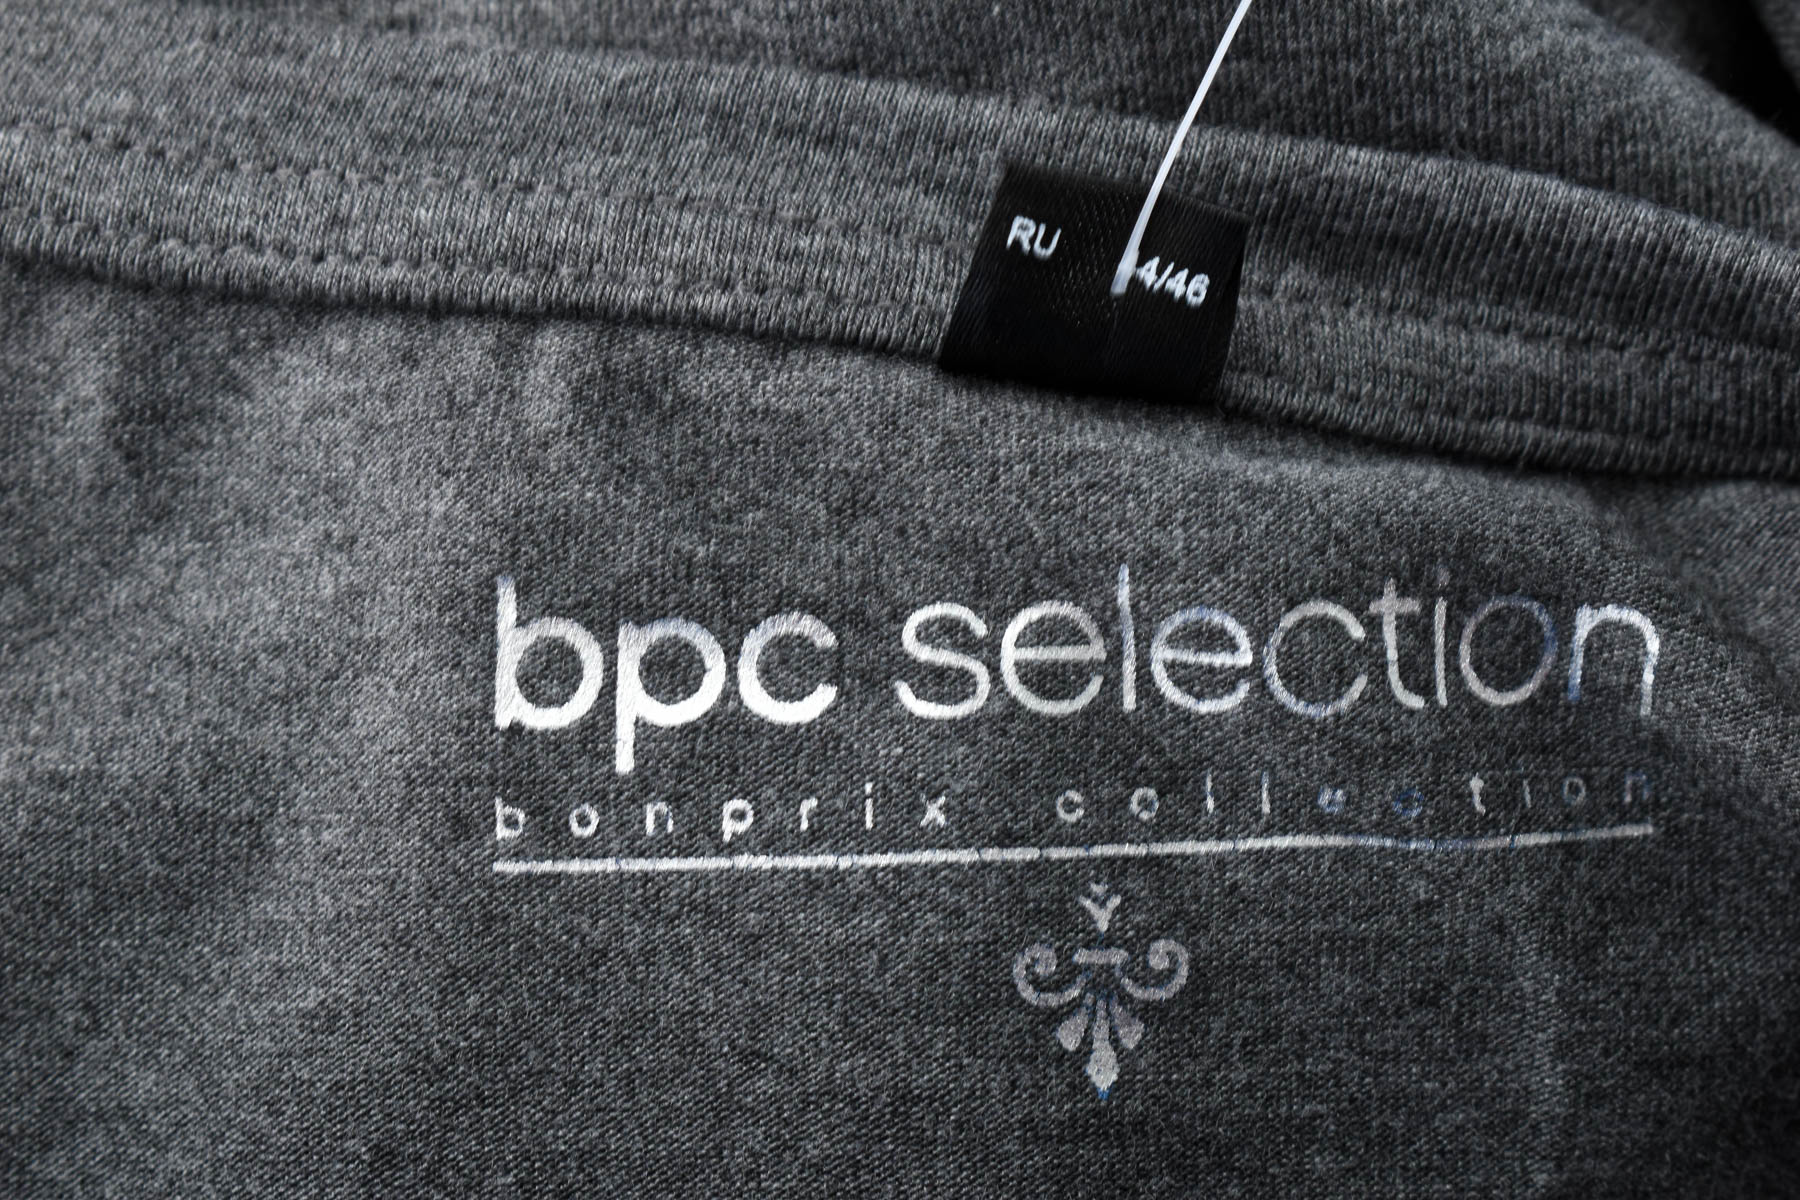 Bluza de damă - Bpc selection bonprix collection - 2